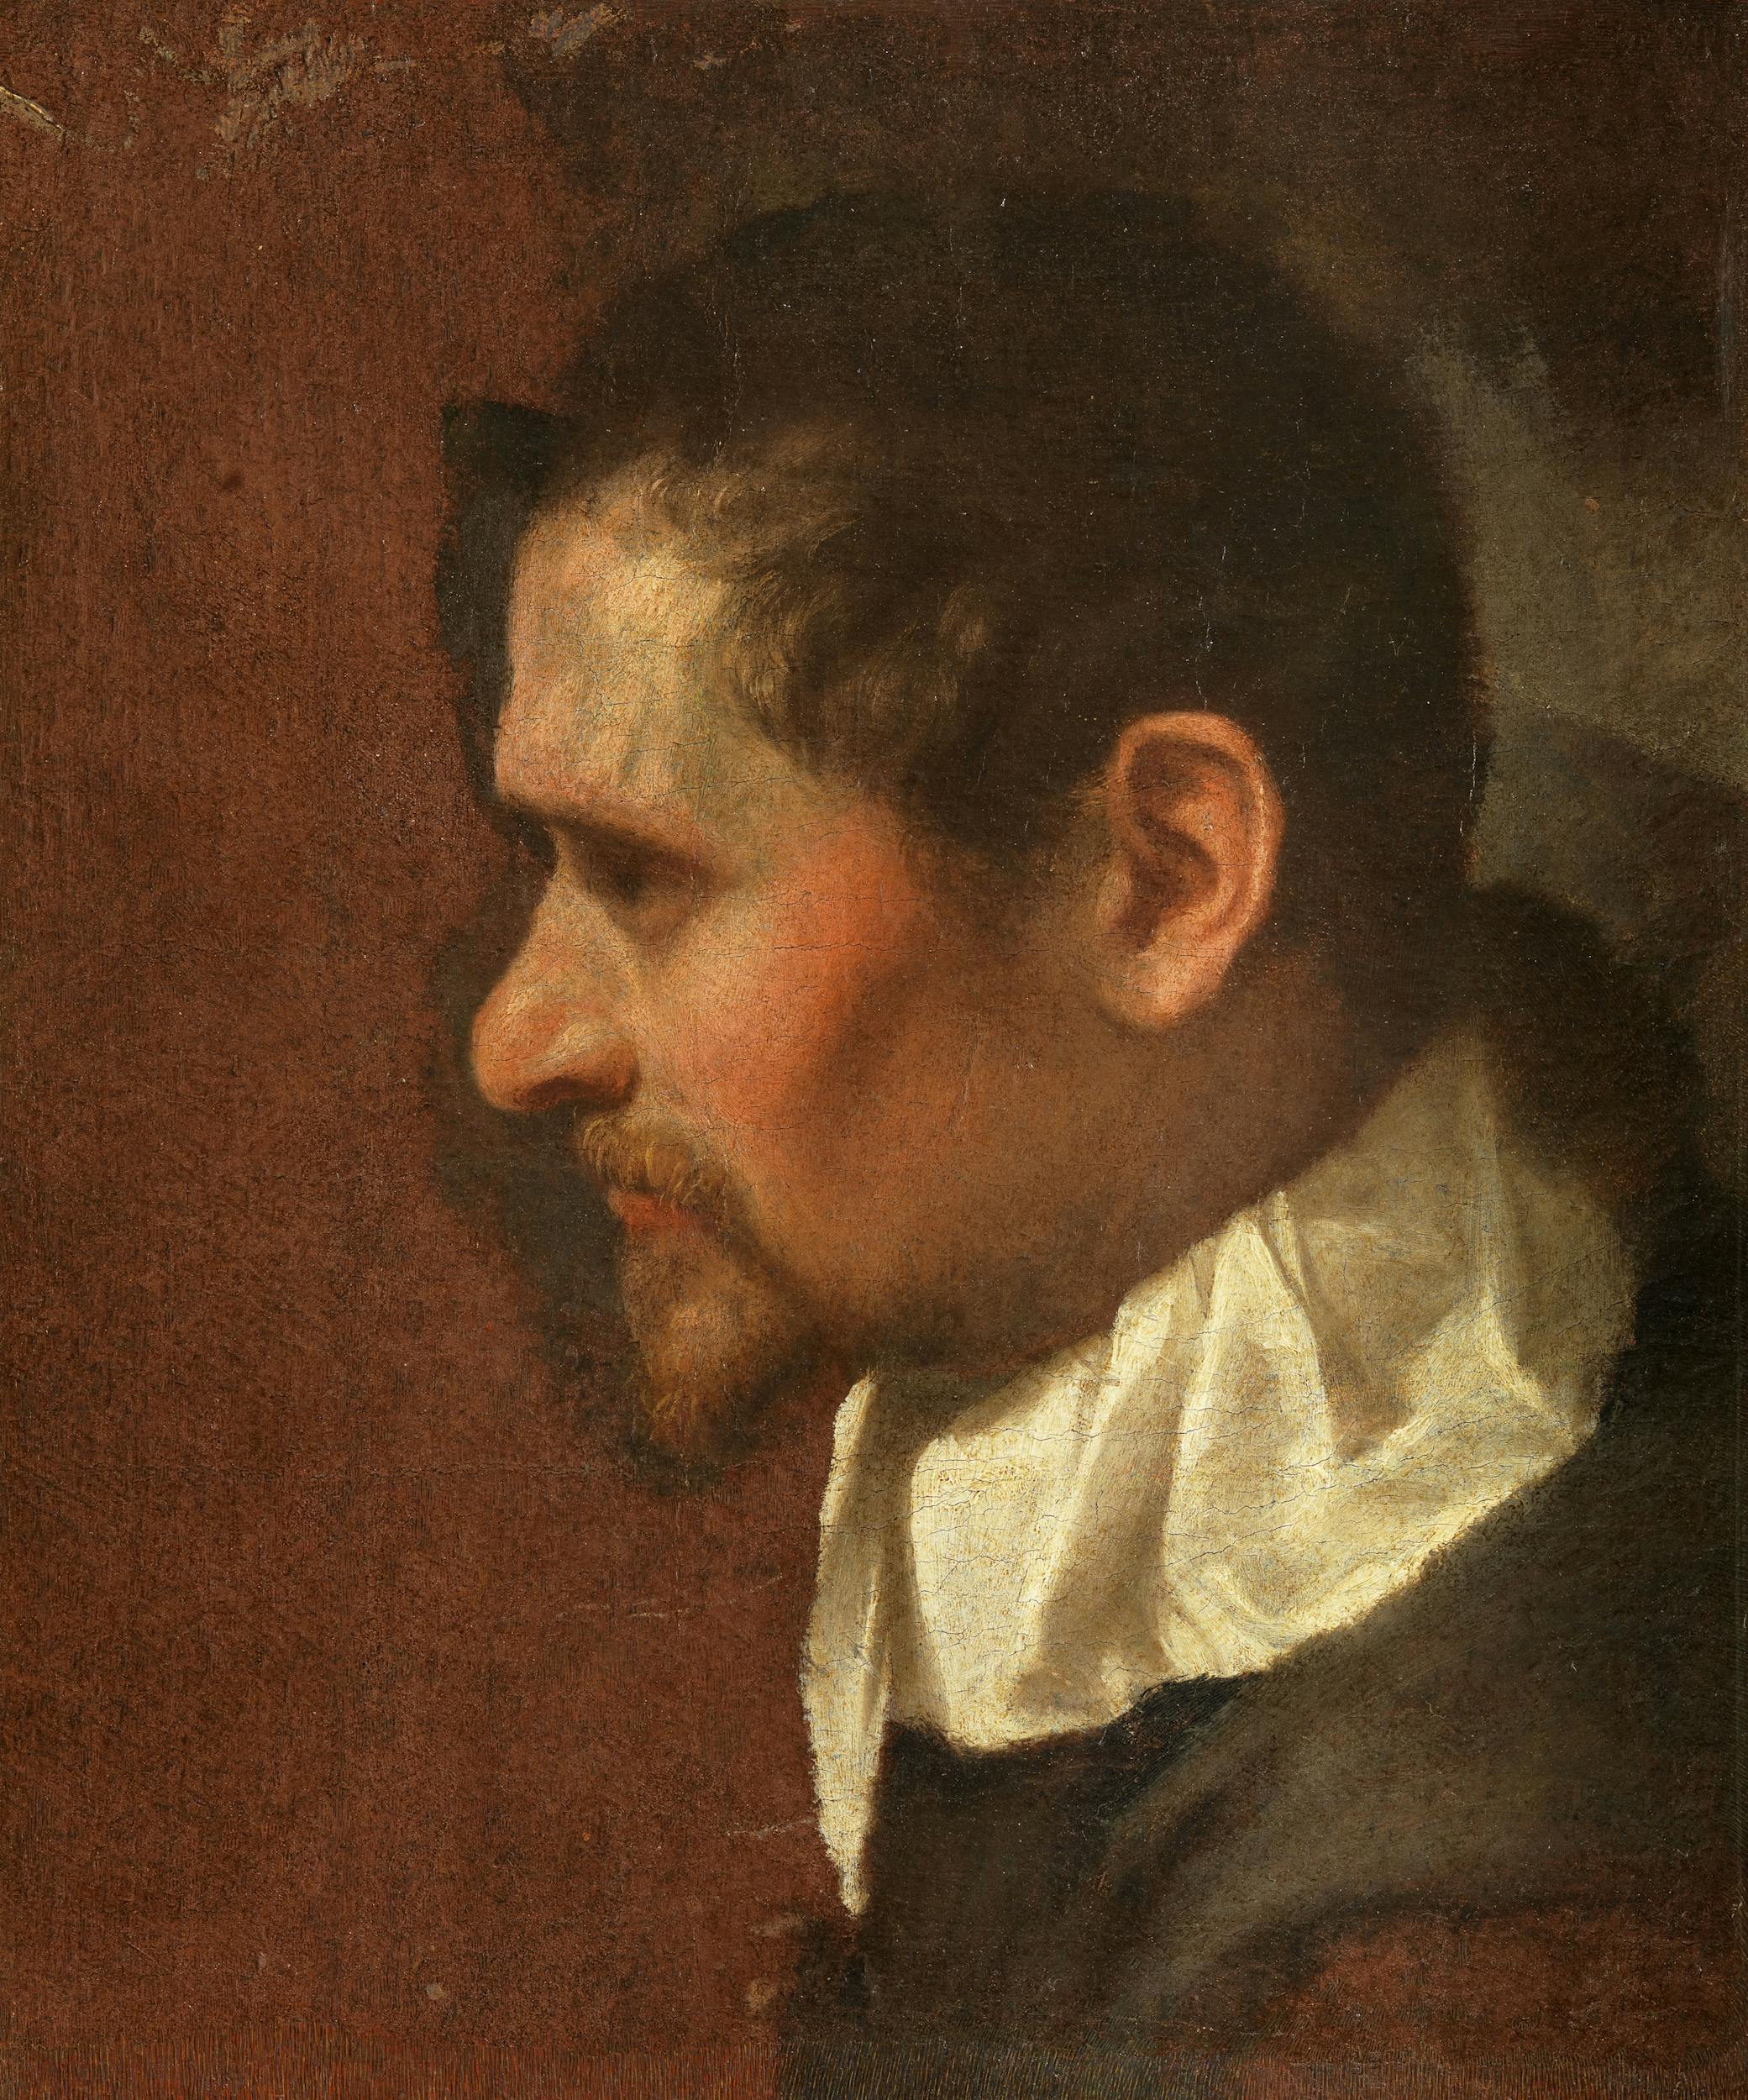 Annibale Carracci, Self-Portrait in Profile, ca. 1590/91, oil on canvas, 46.5 x 39.6. Florence, Uffizi Gallery (inv. 1890, no. 1797).